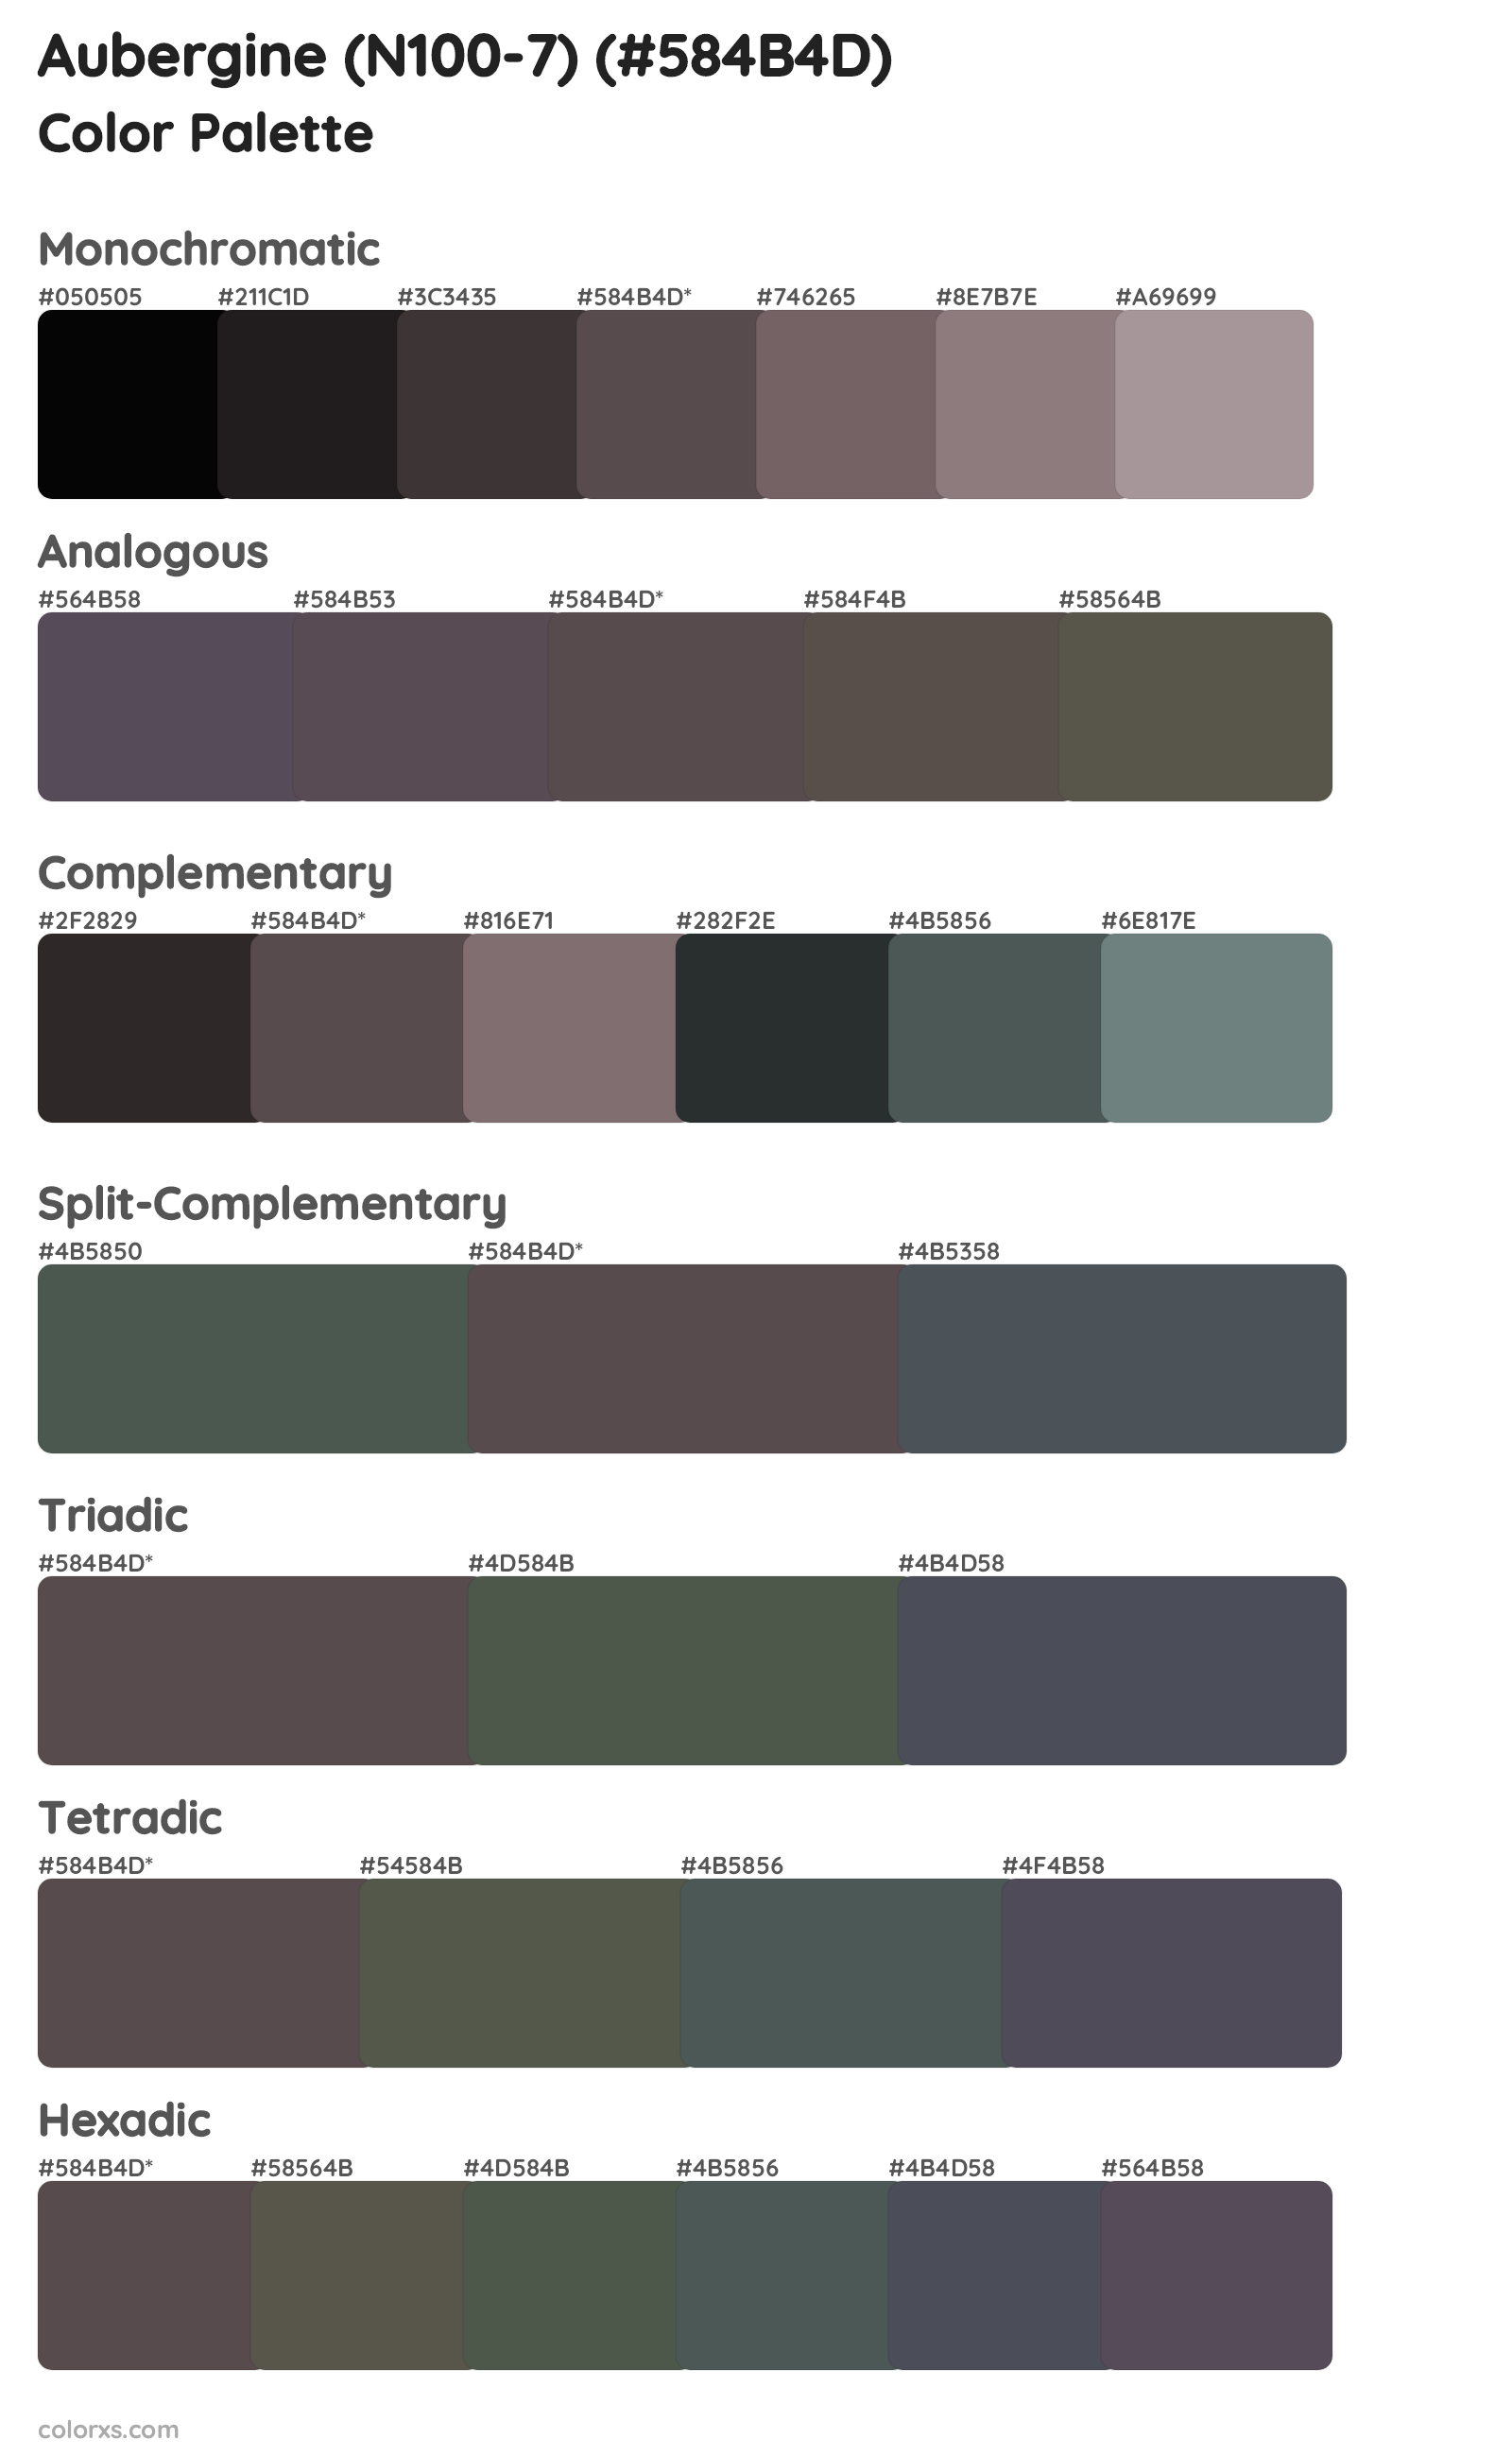 Aubergine (N100-7) Color Scheme Palettes